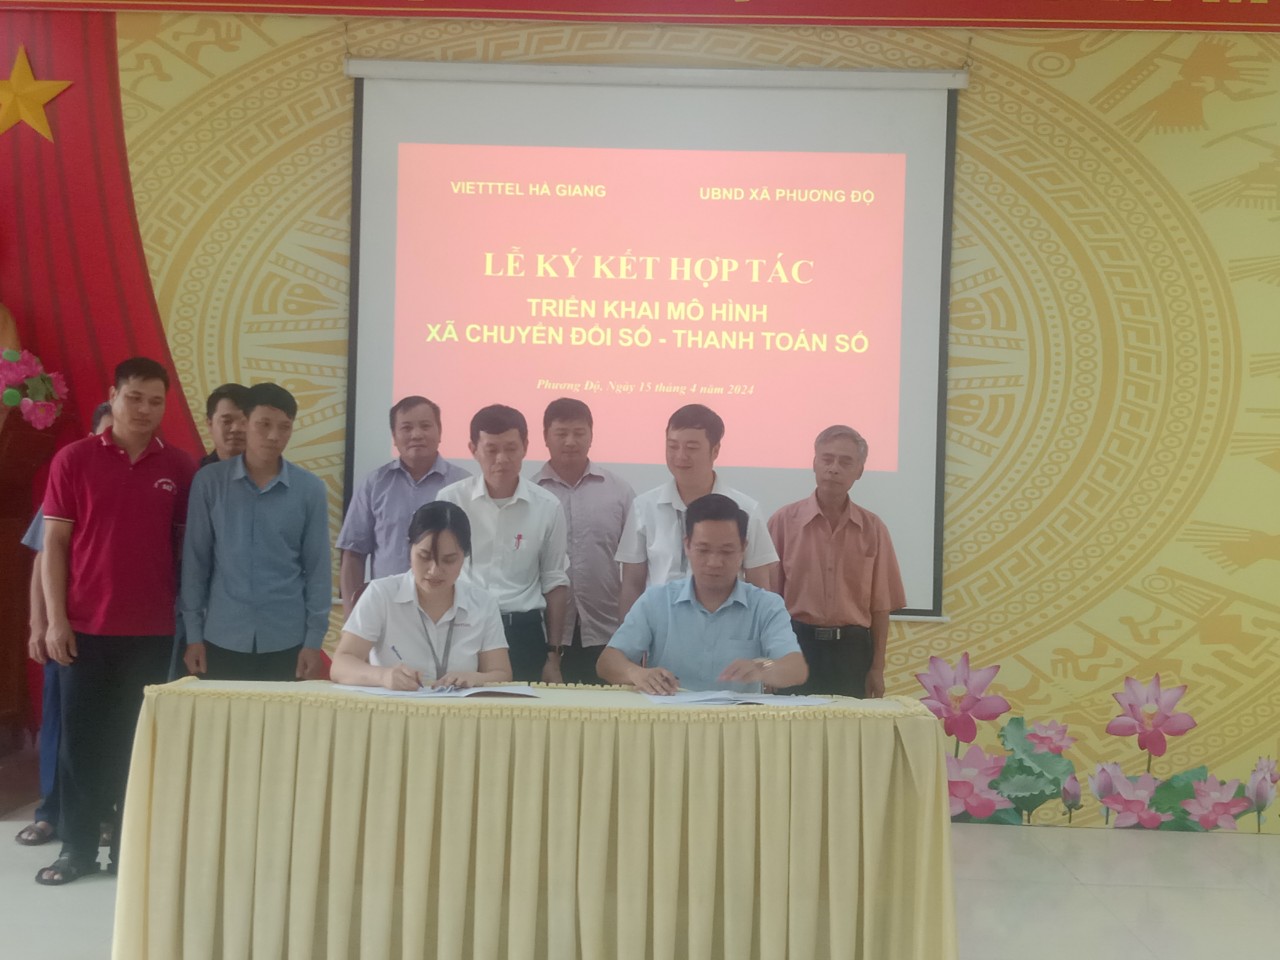 Lễ ký kết hợp tác giữa Viettel Hà Giang với UBND xã Phương Độ về triển khai chuyển đổi số, thanh toán số